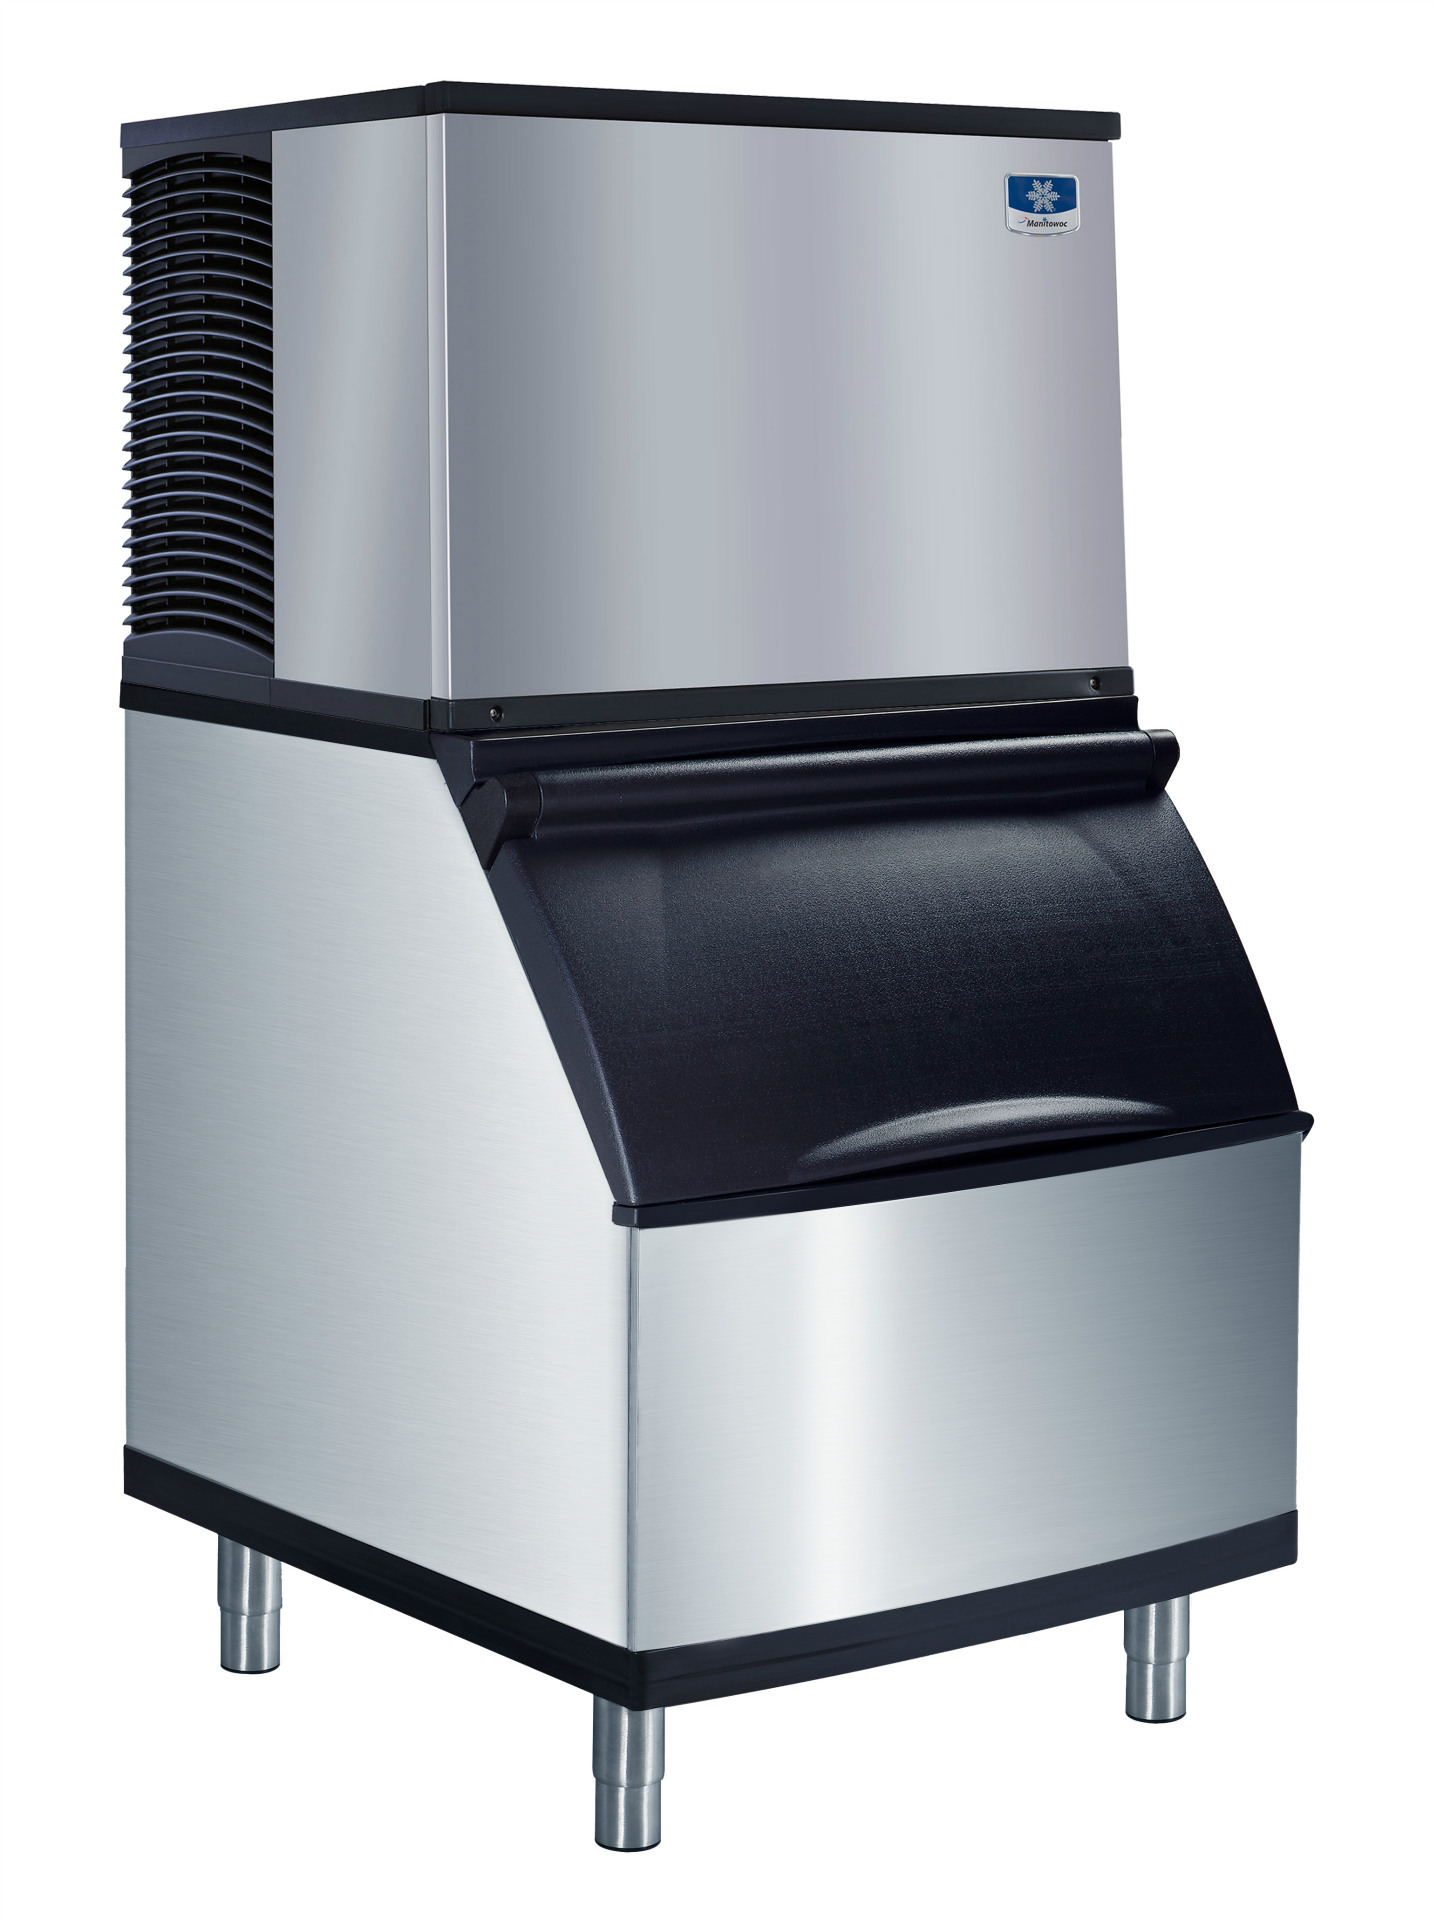 万利多商用大型制冰机 原装进口制冰机 大容量 分体式MD系列 正品